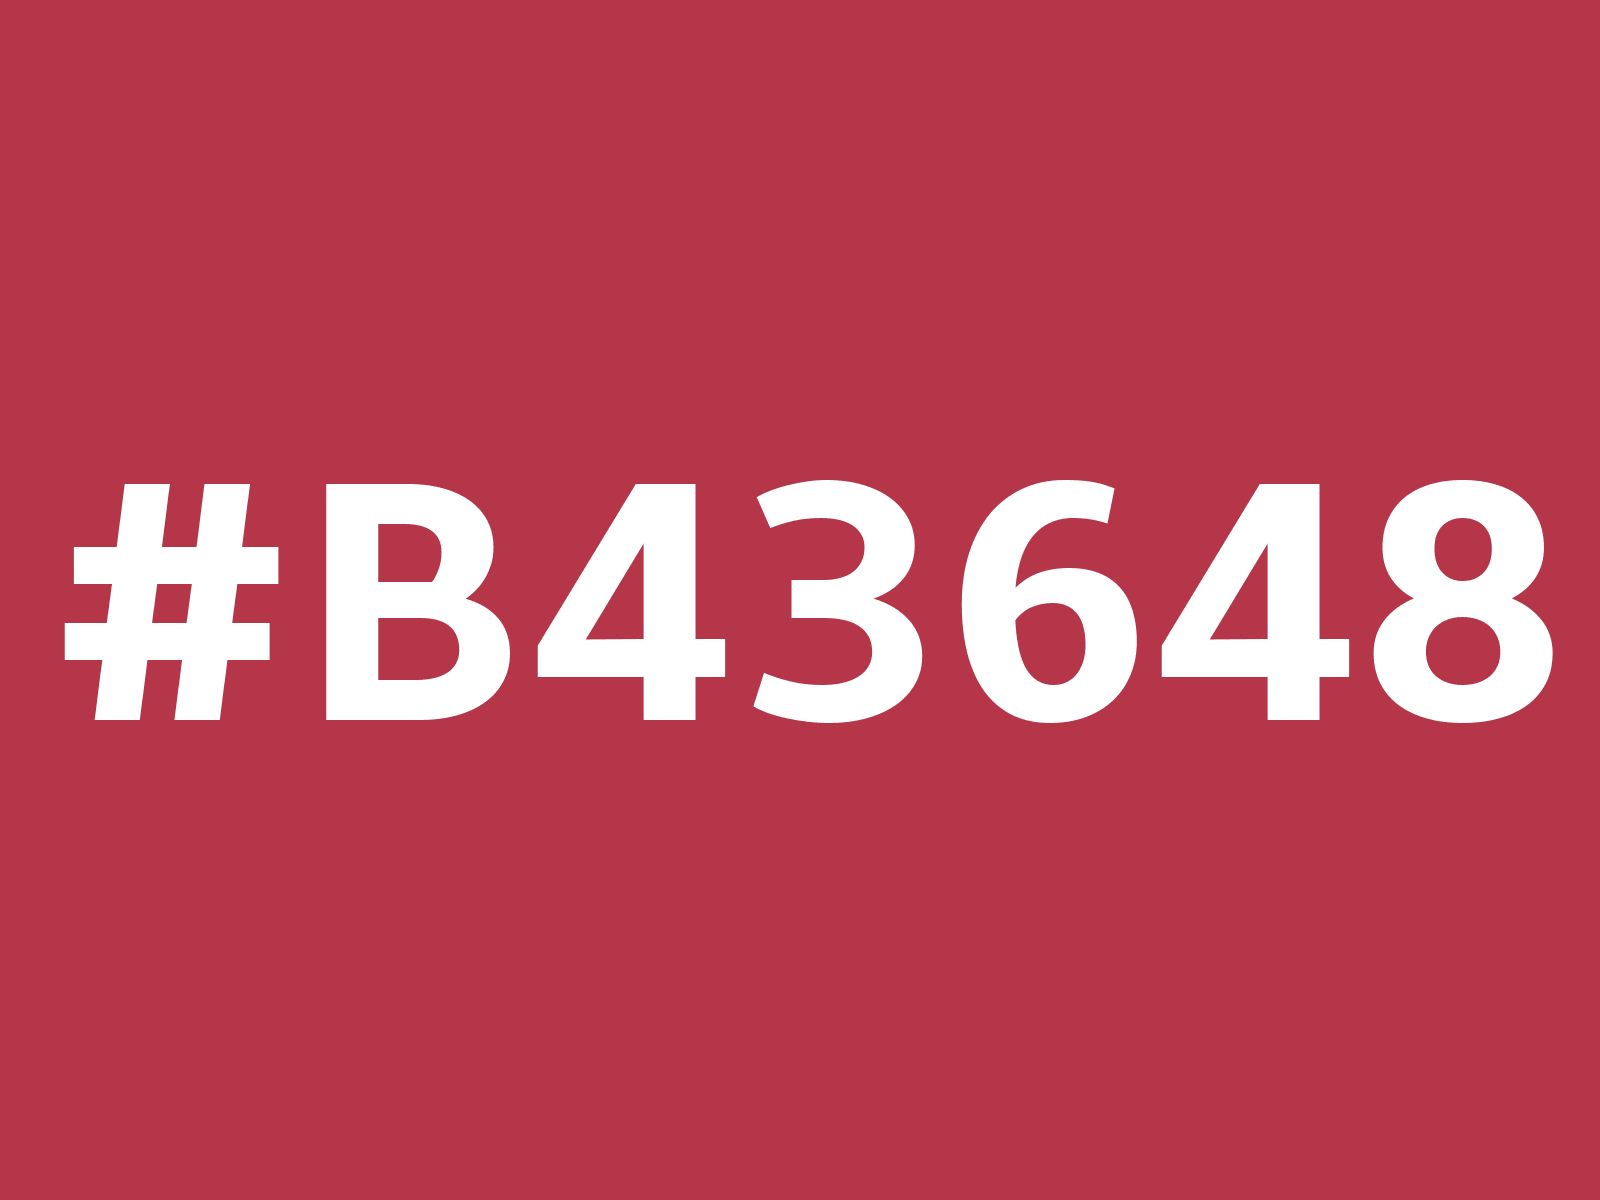 b43648